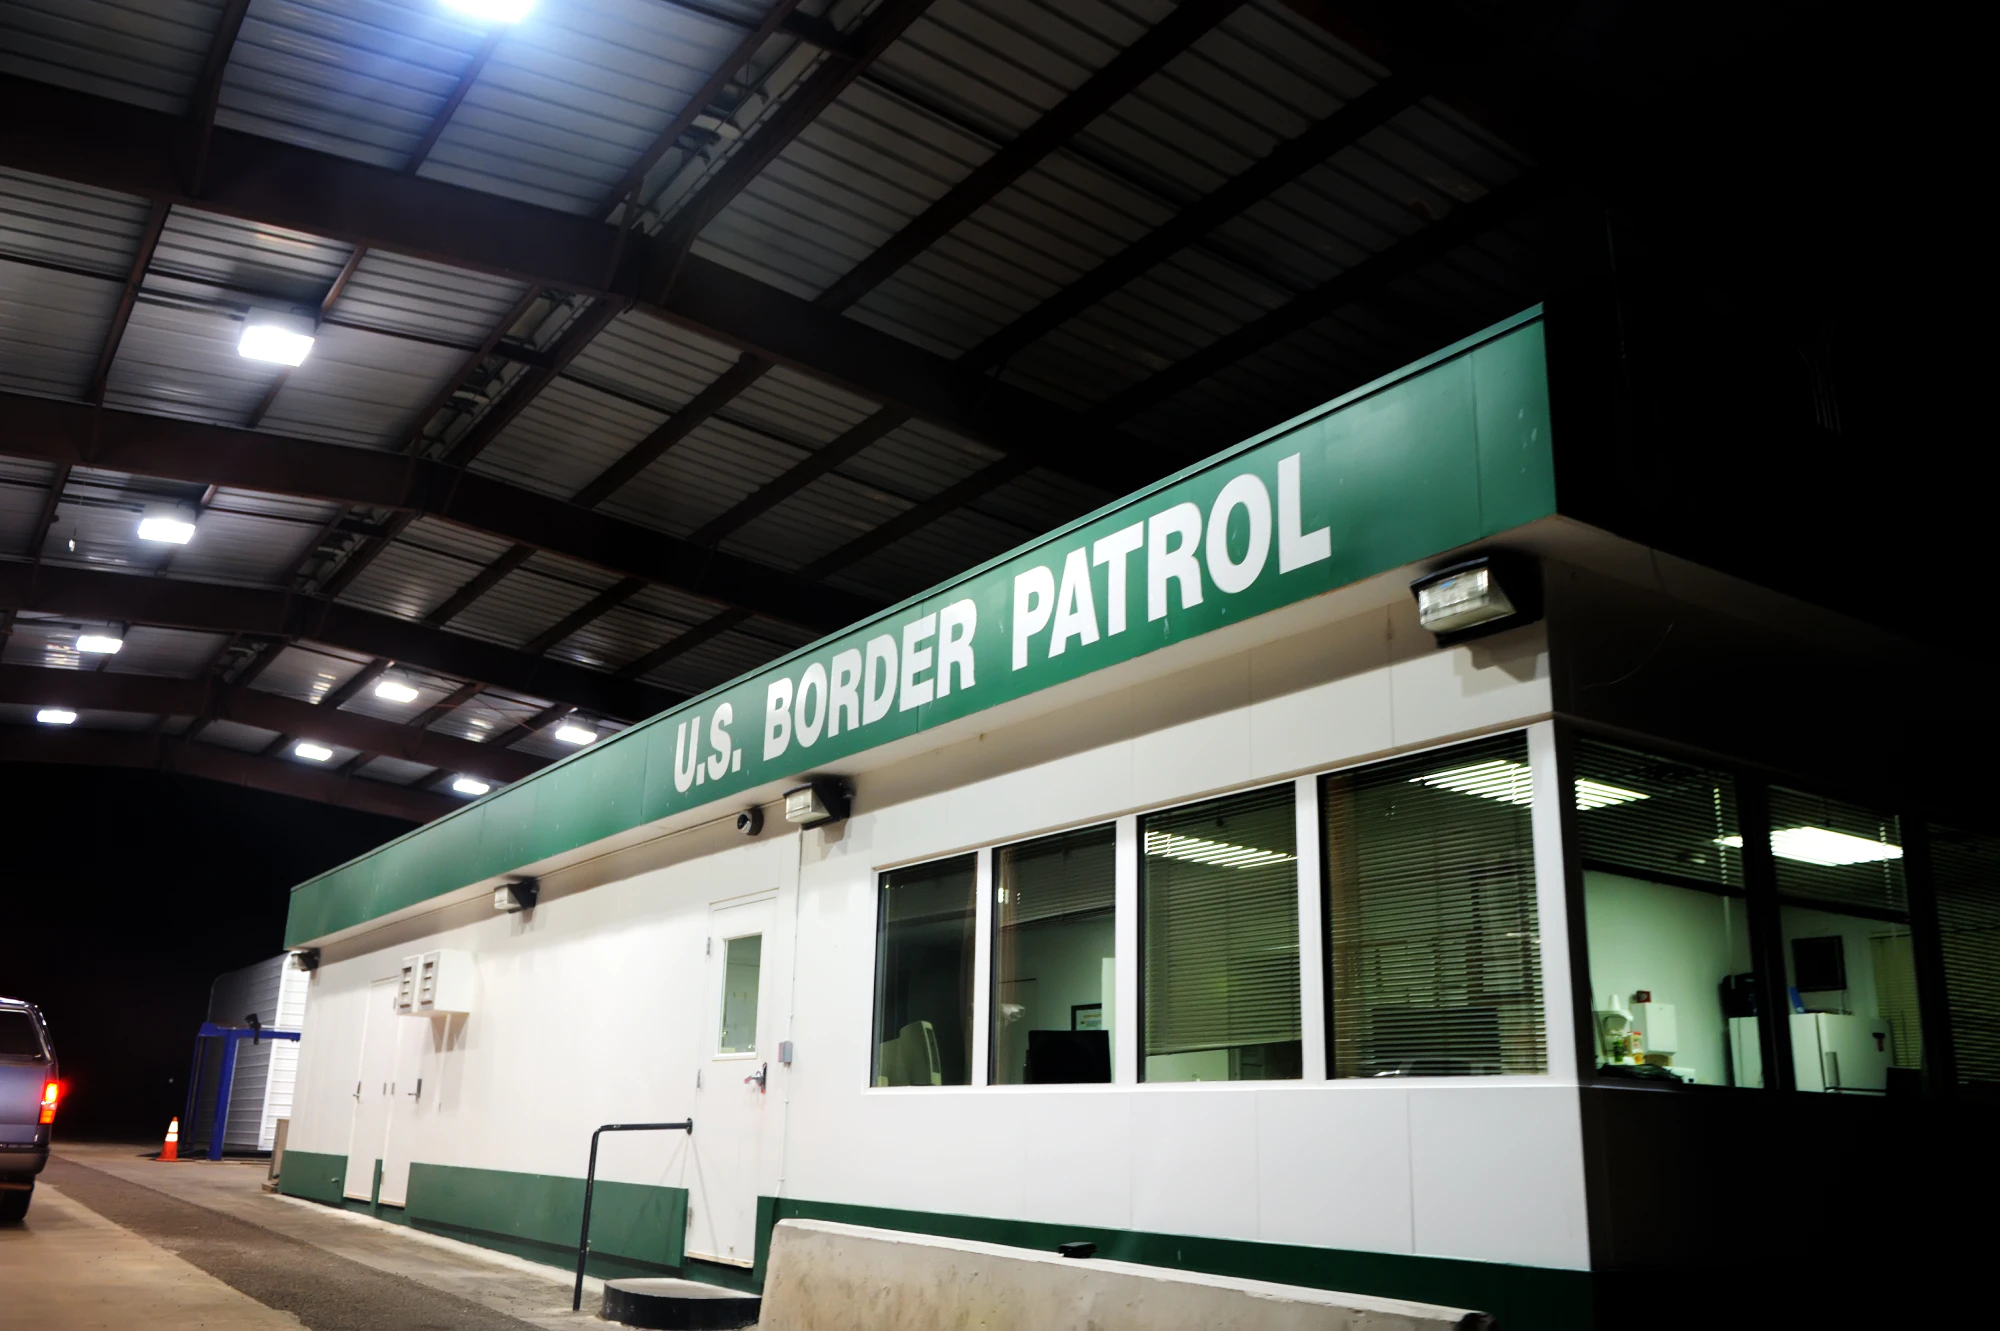 US Border Patrol booth at night